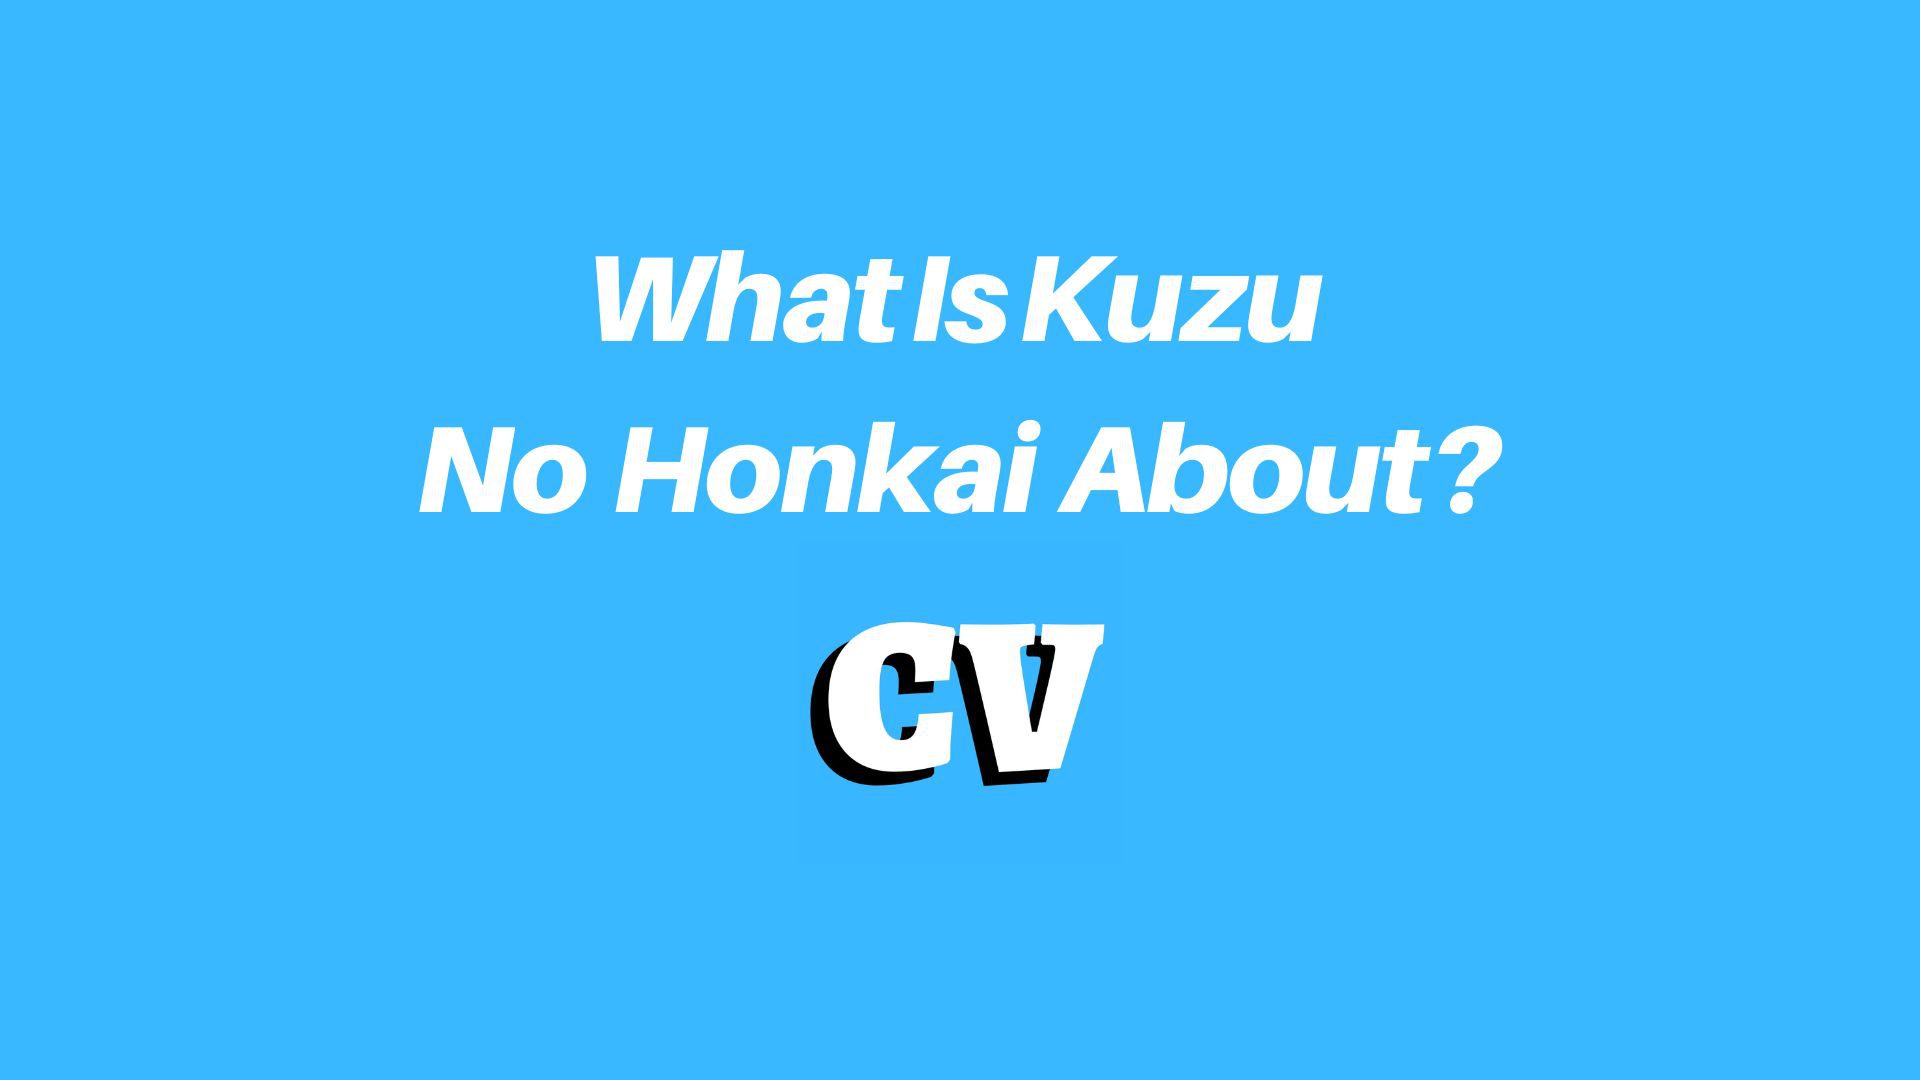 He aha ka Kuzu No Honkai?